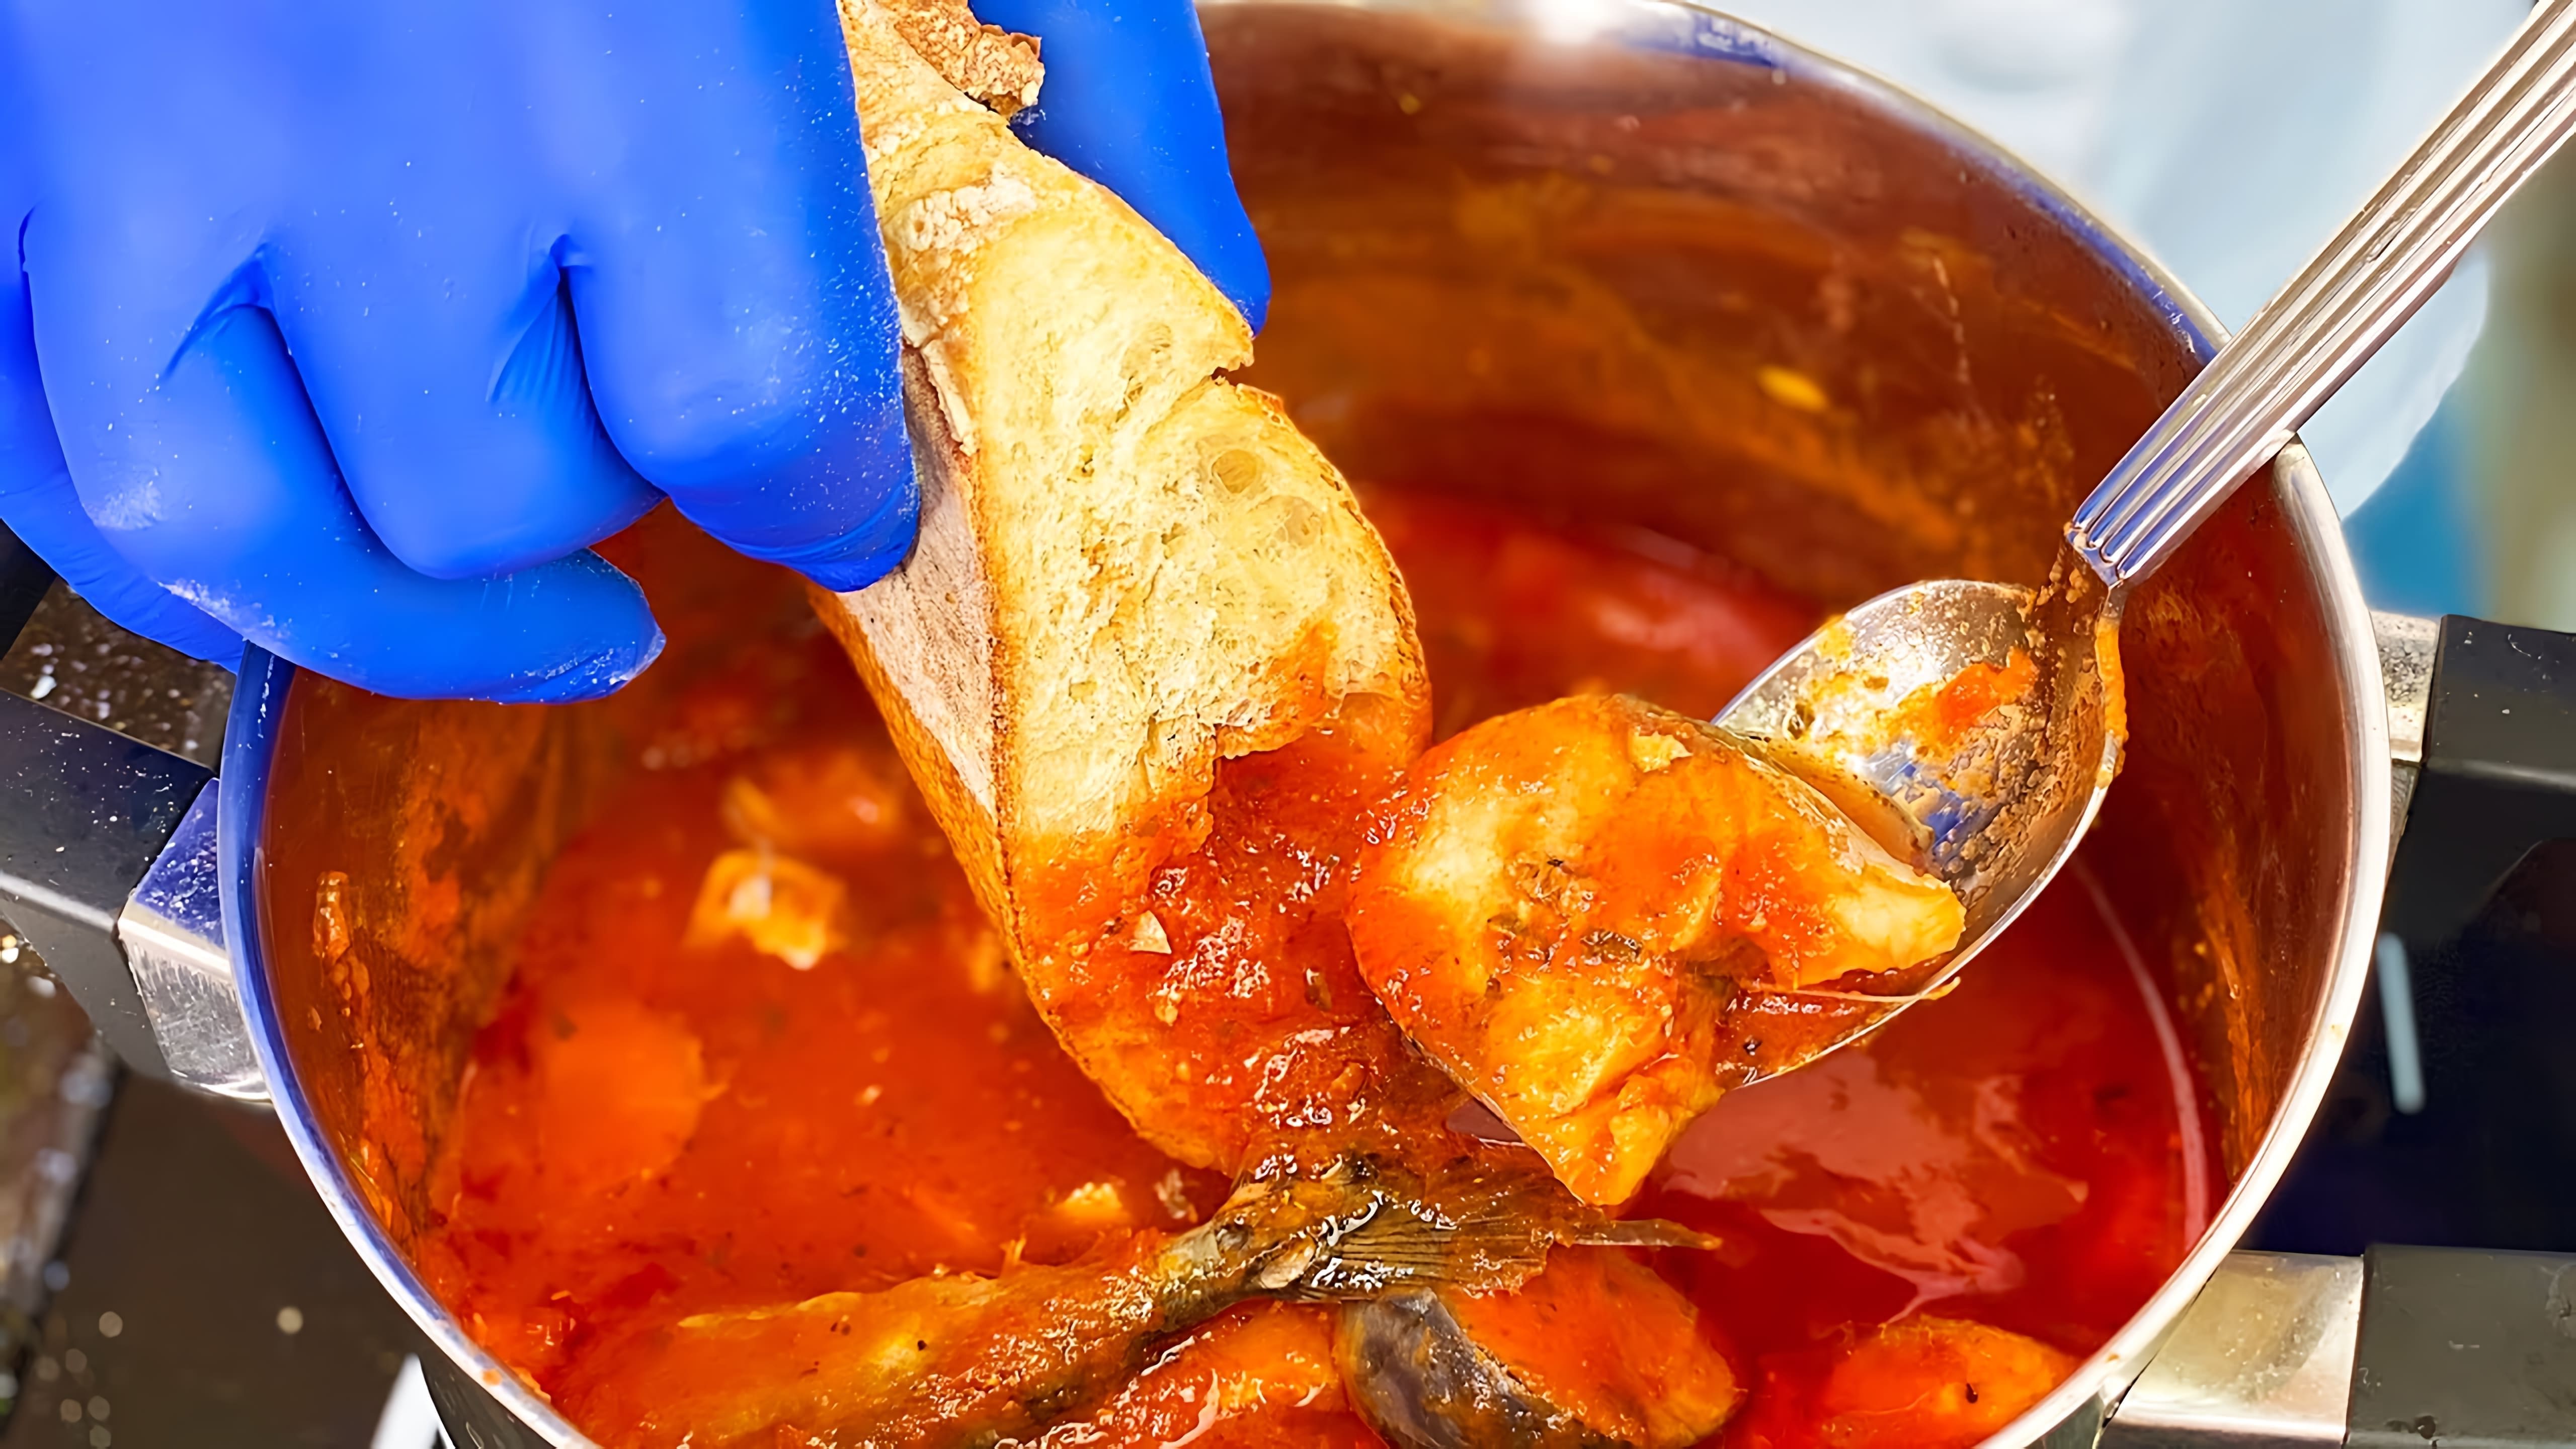 В этом видео демонстрируется рецепт приготовления божественной скумбрии в томатном соусе